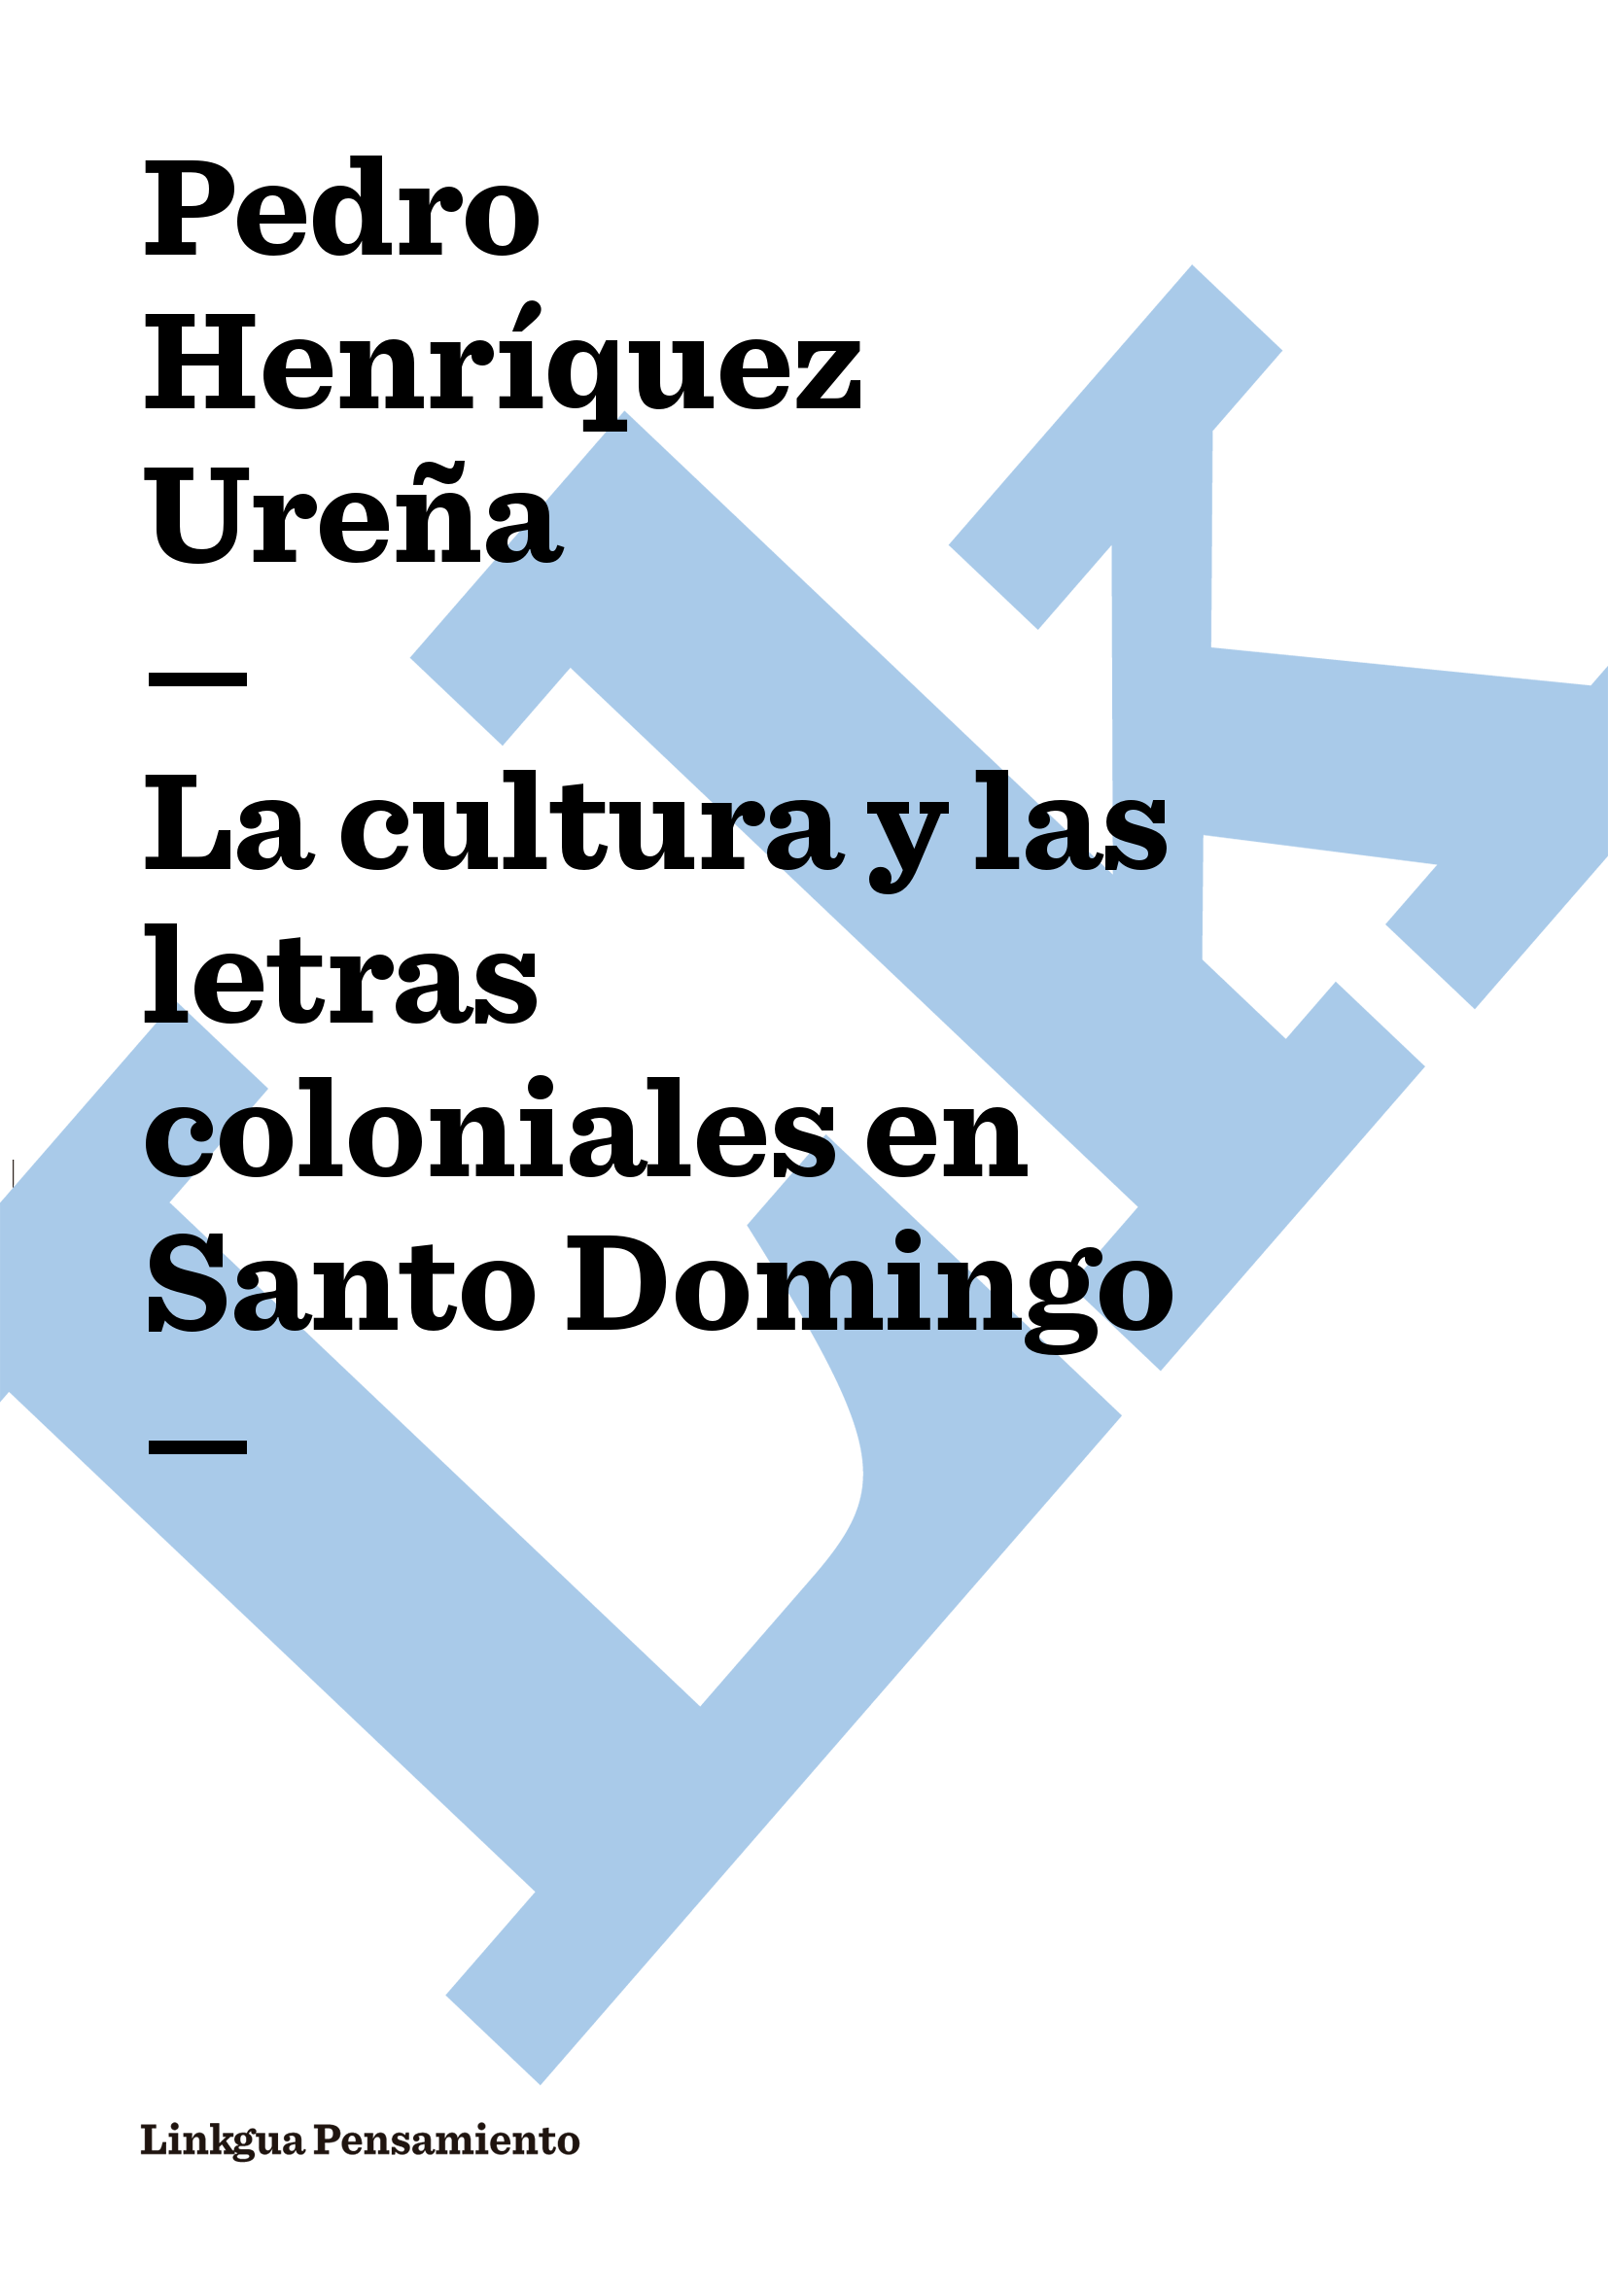 Pedro Henríquez Ureña La cultura y las letras coloniales en Santo Domingo - photo 1